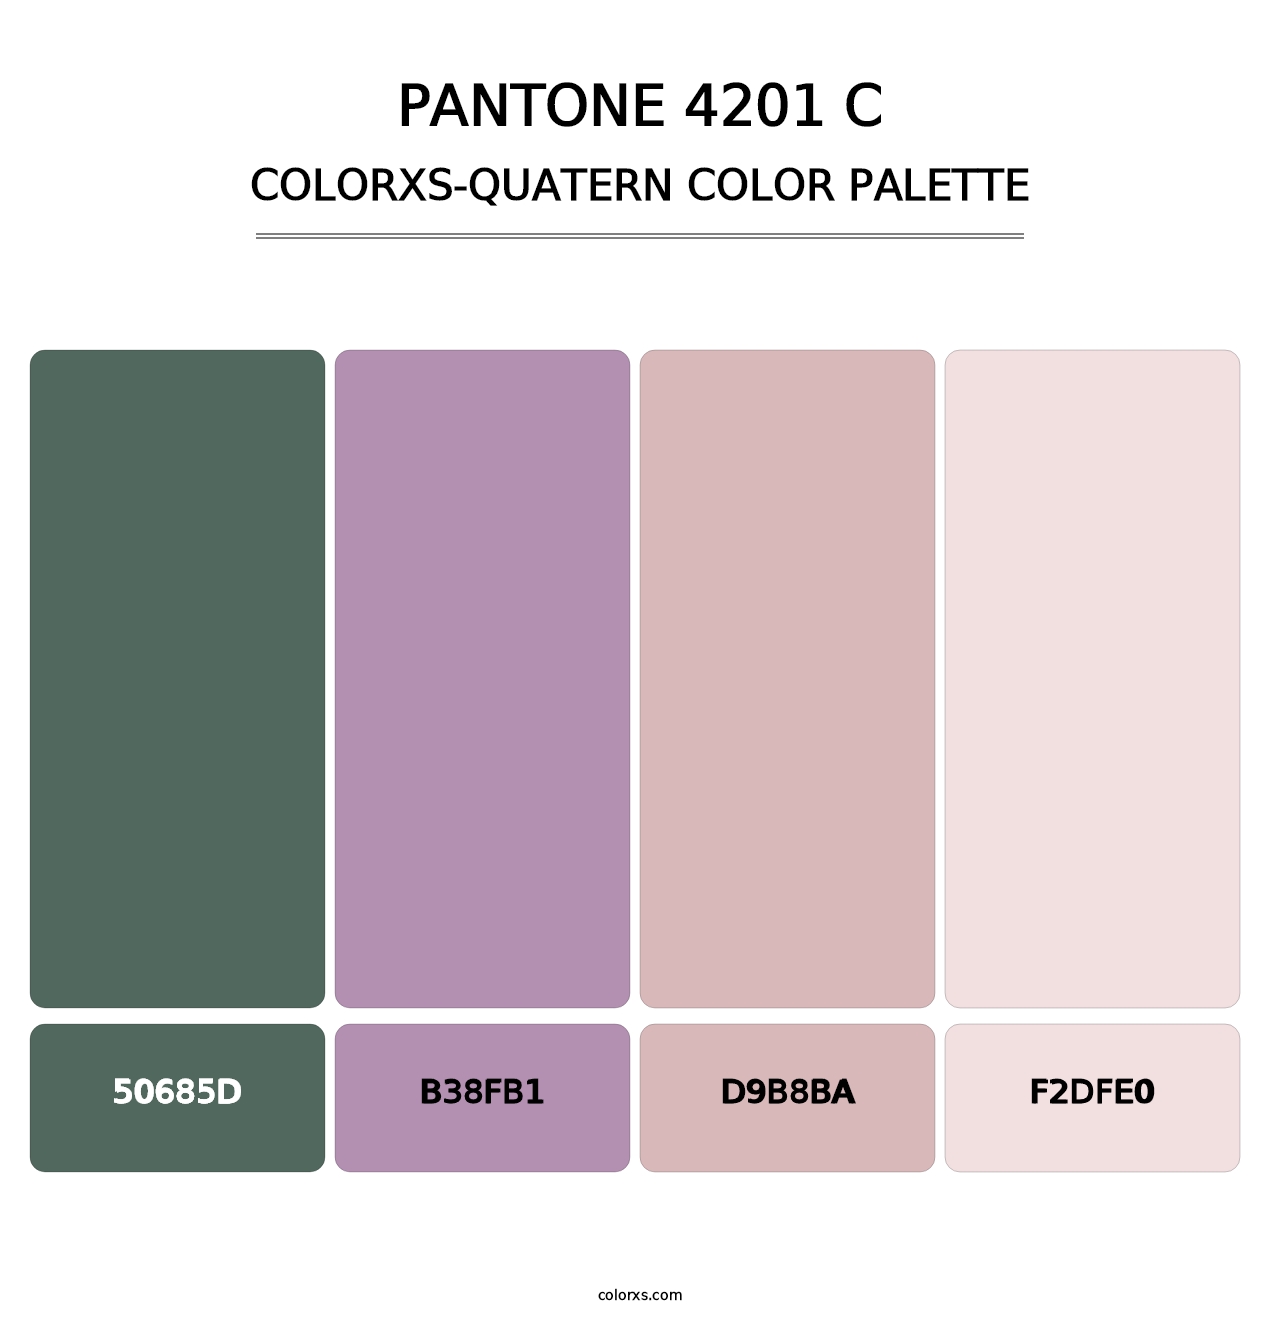 PANTONE 4201 C - Colorxs Quatern Palette